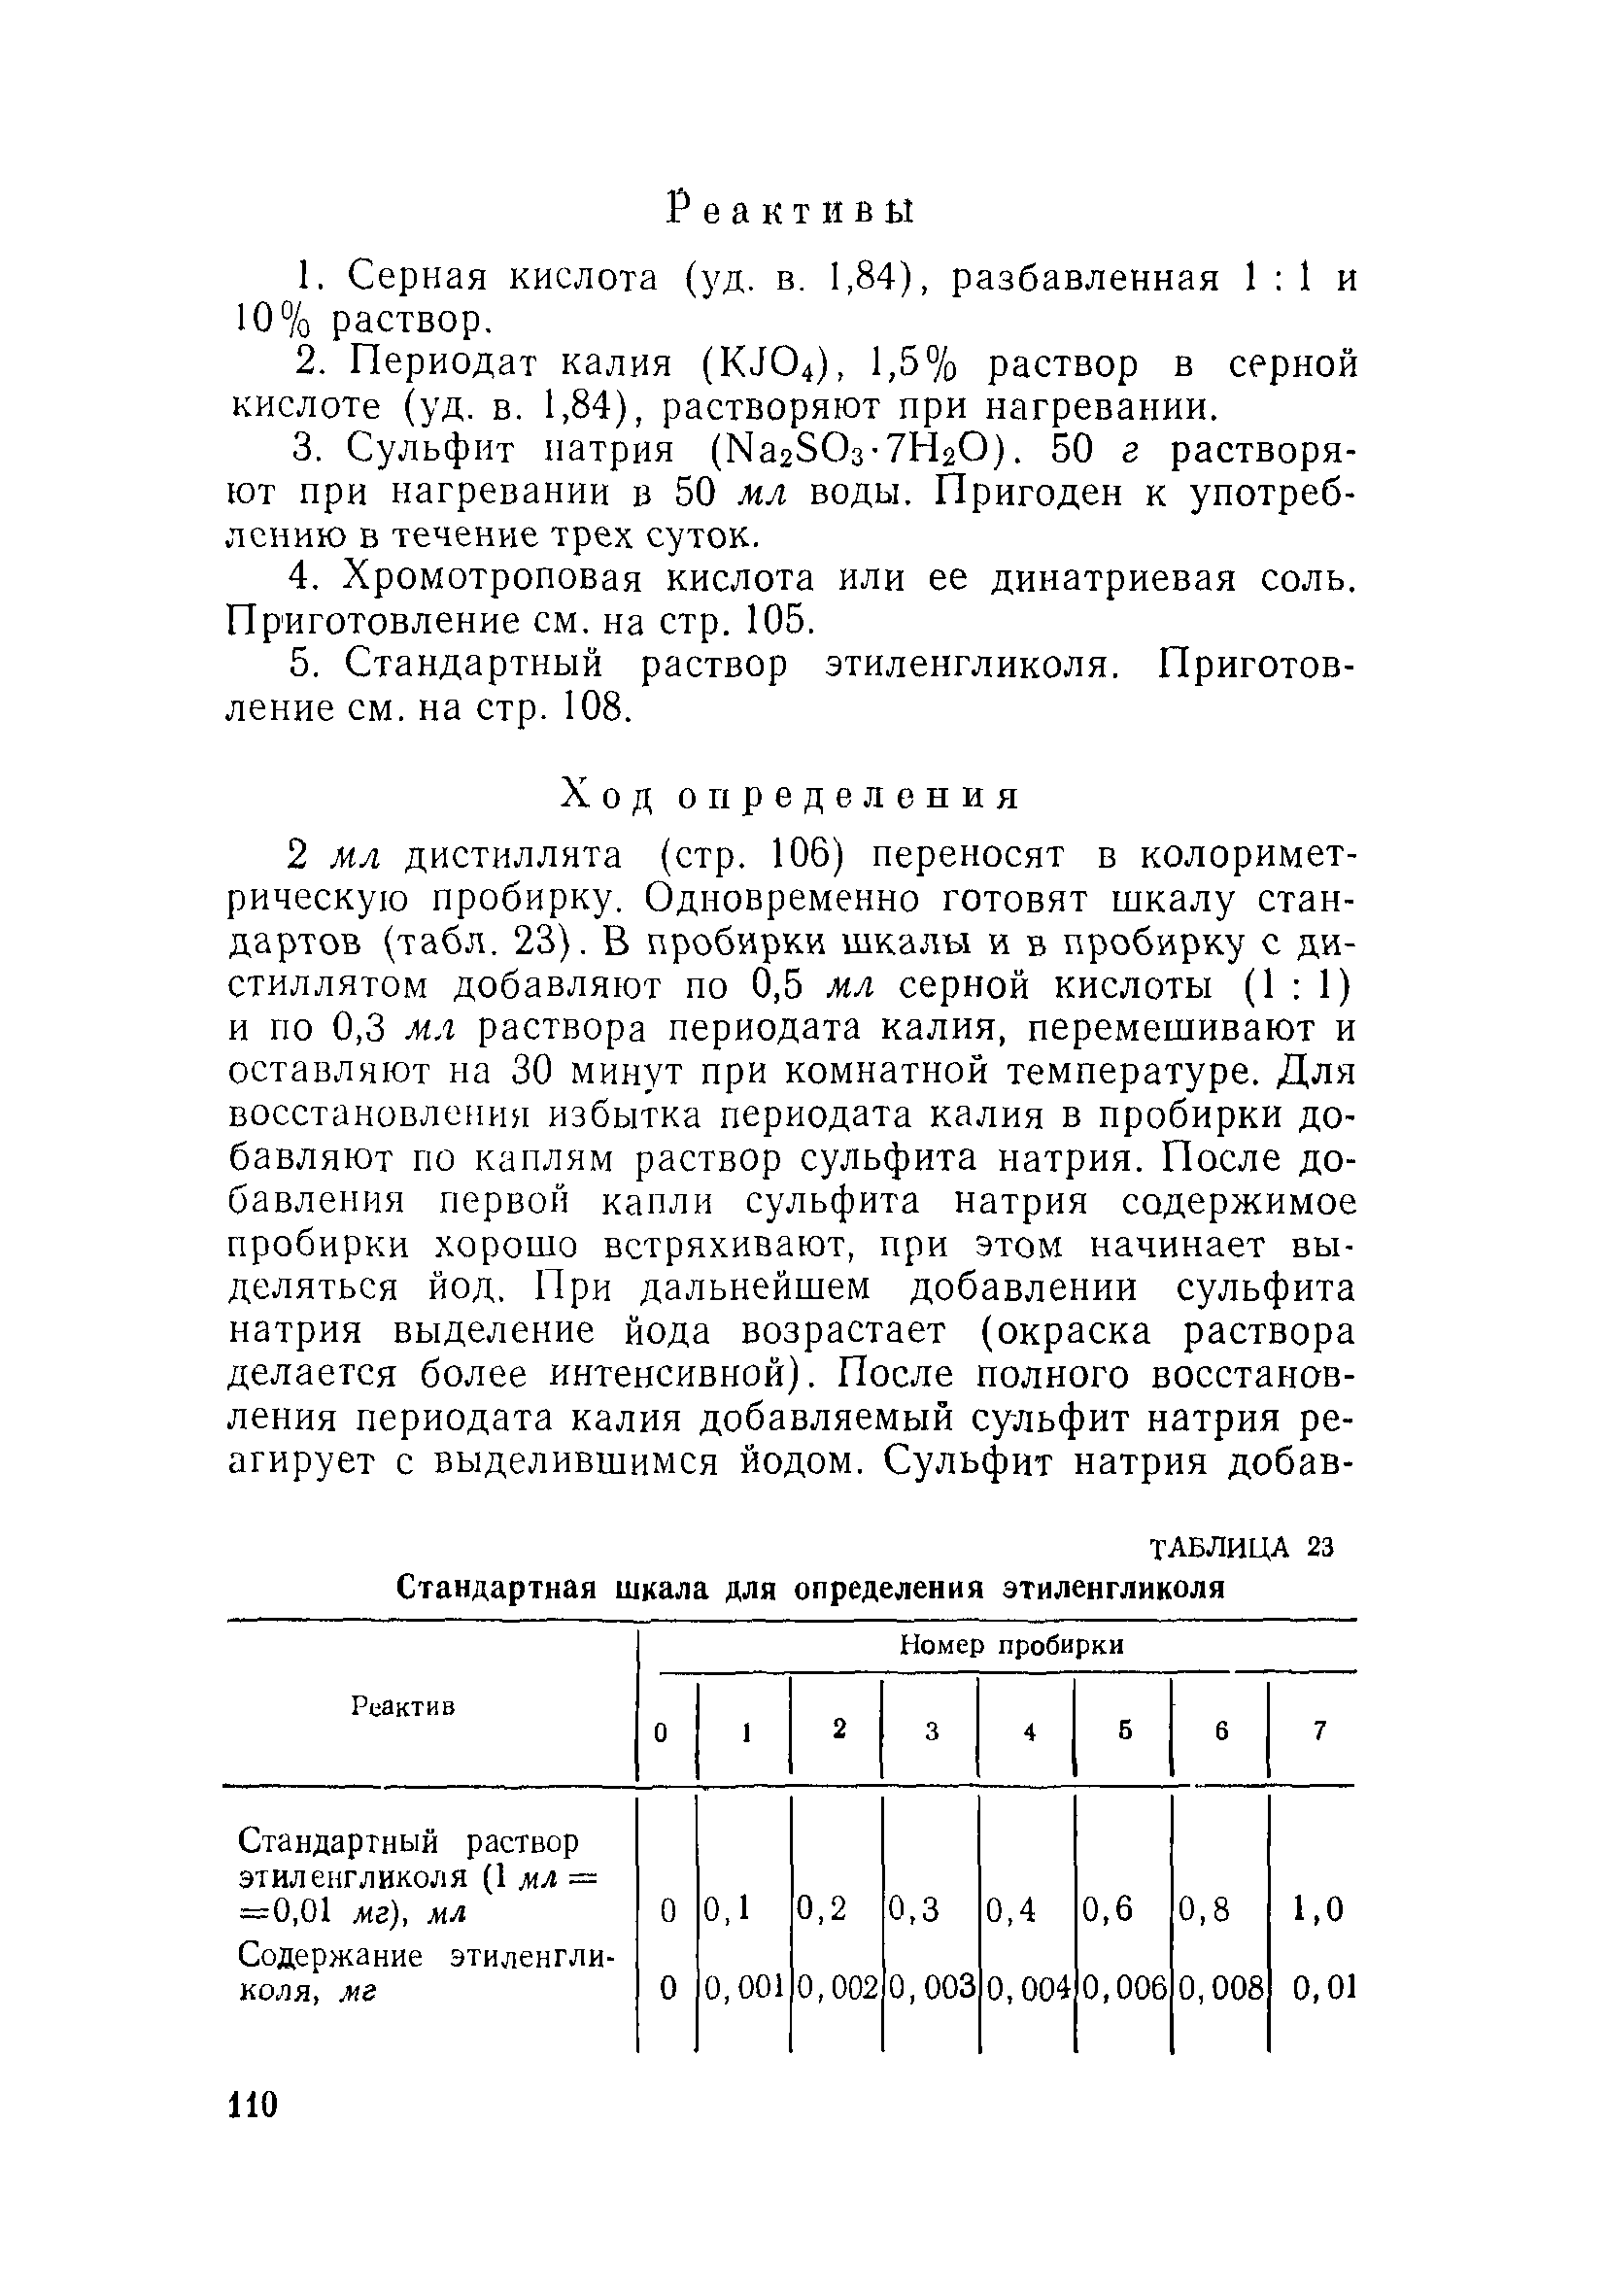 Инструкция 880-71